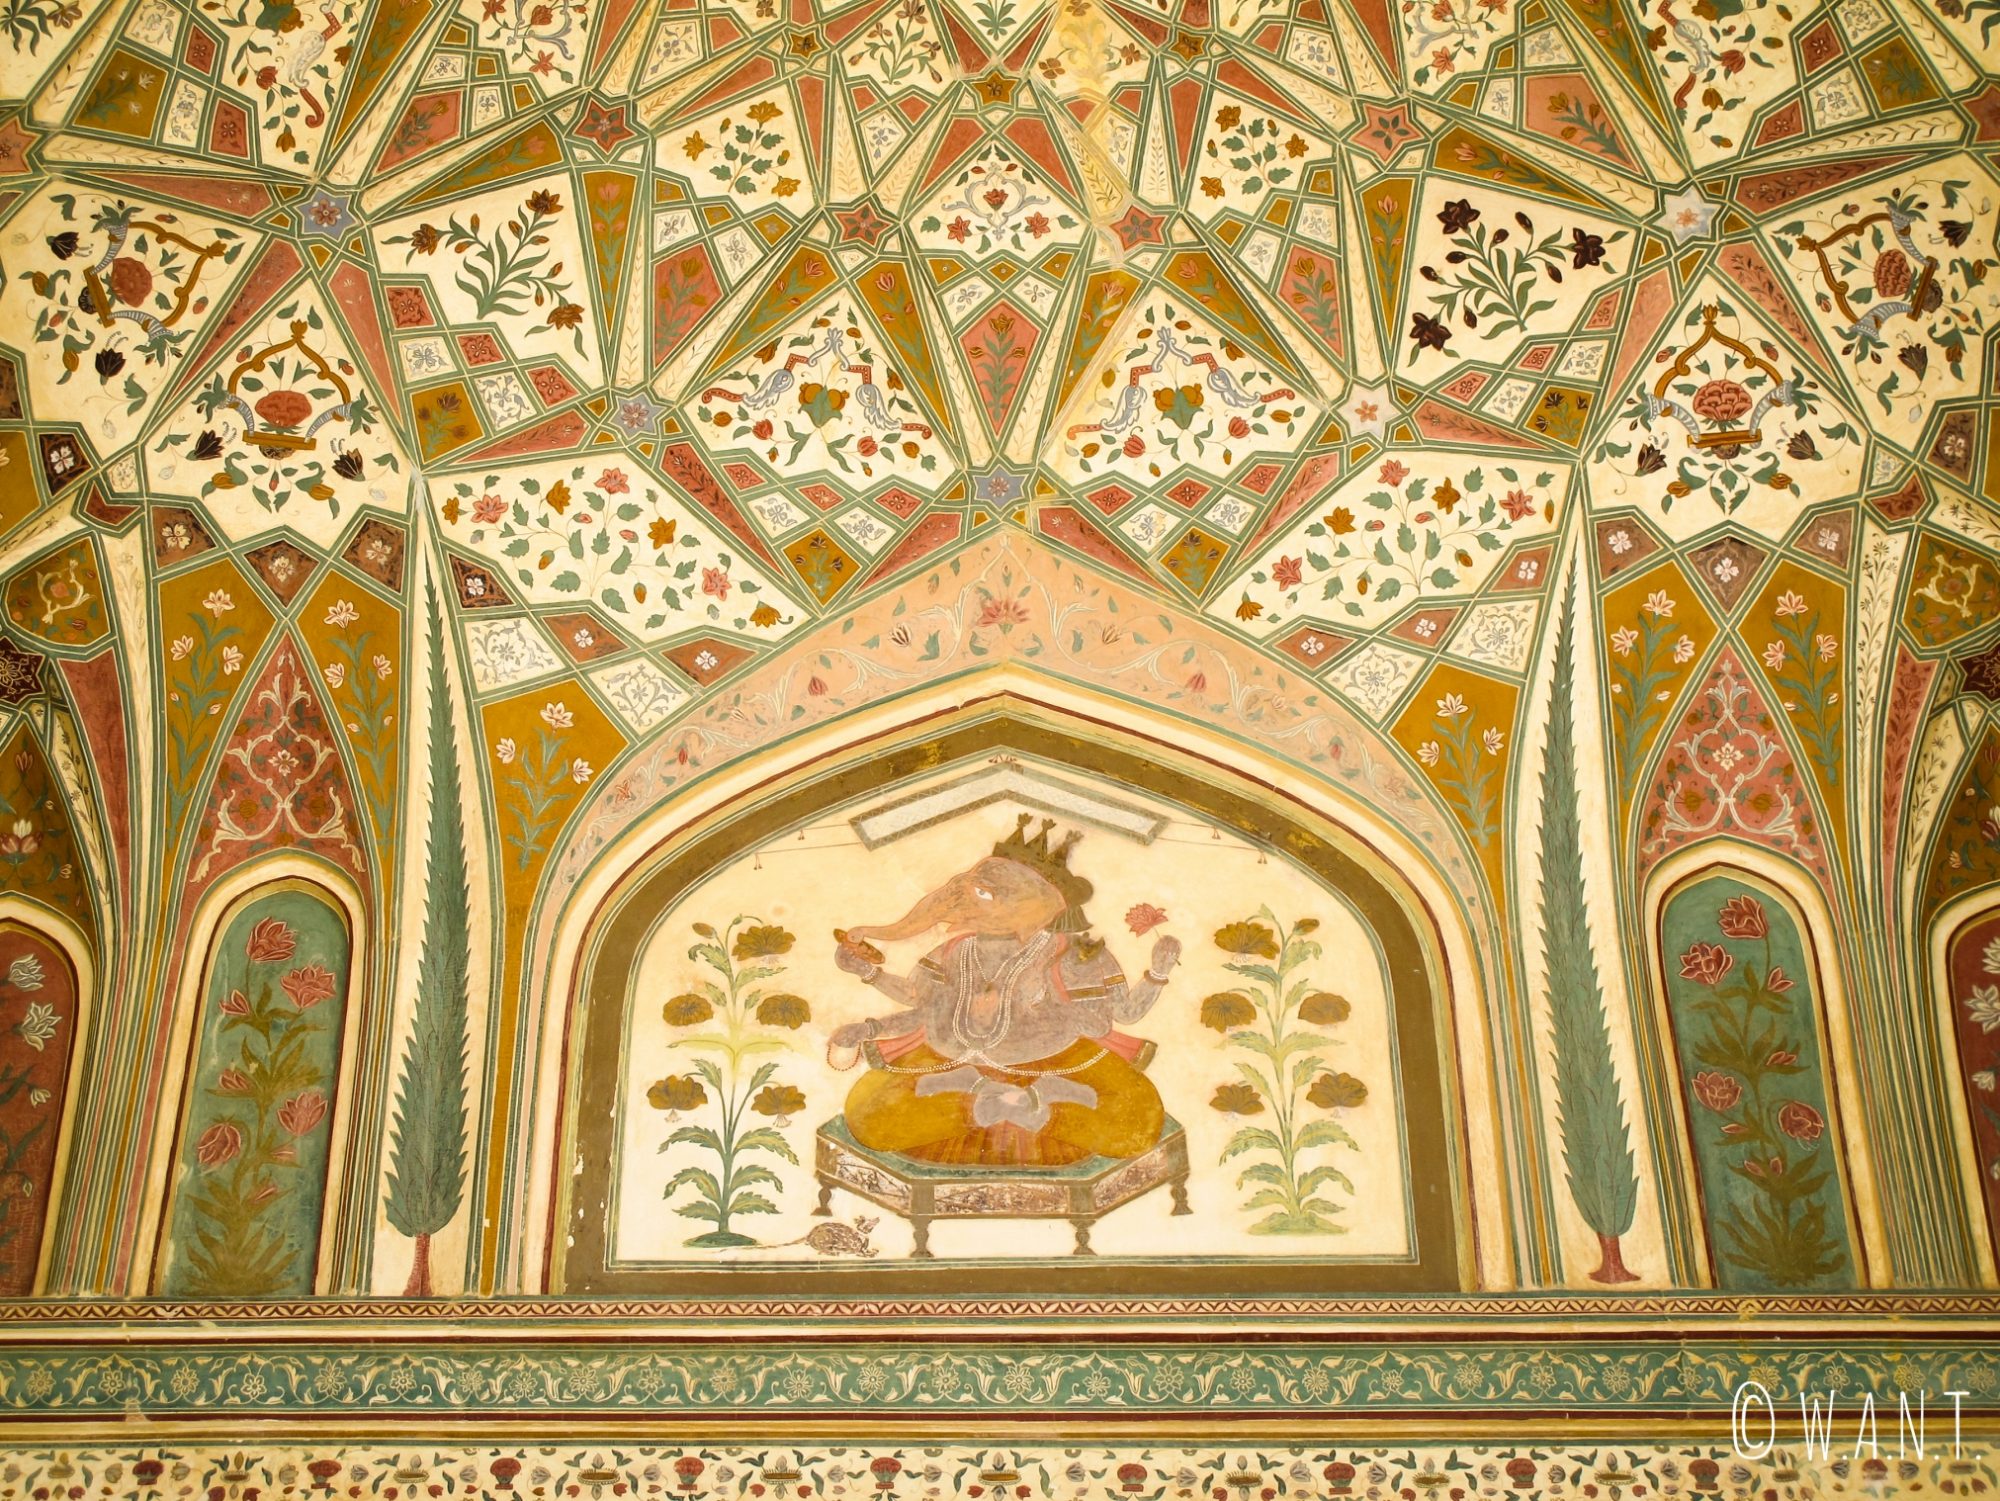 Magnifique fresque murale sur les murs du Fort d'Amber de Jaipur